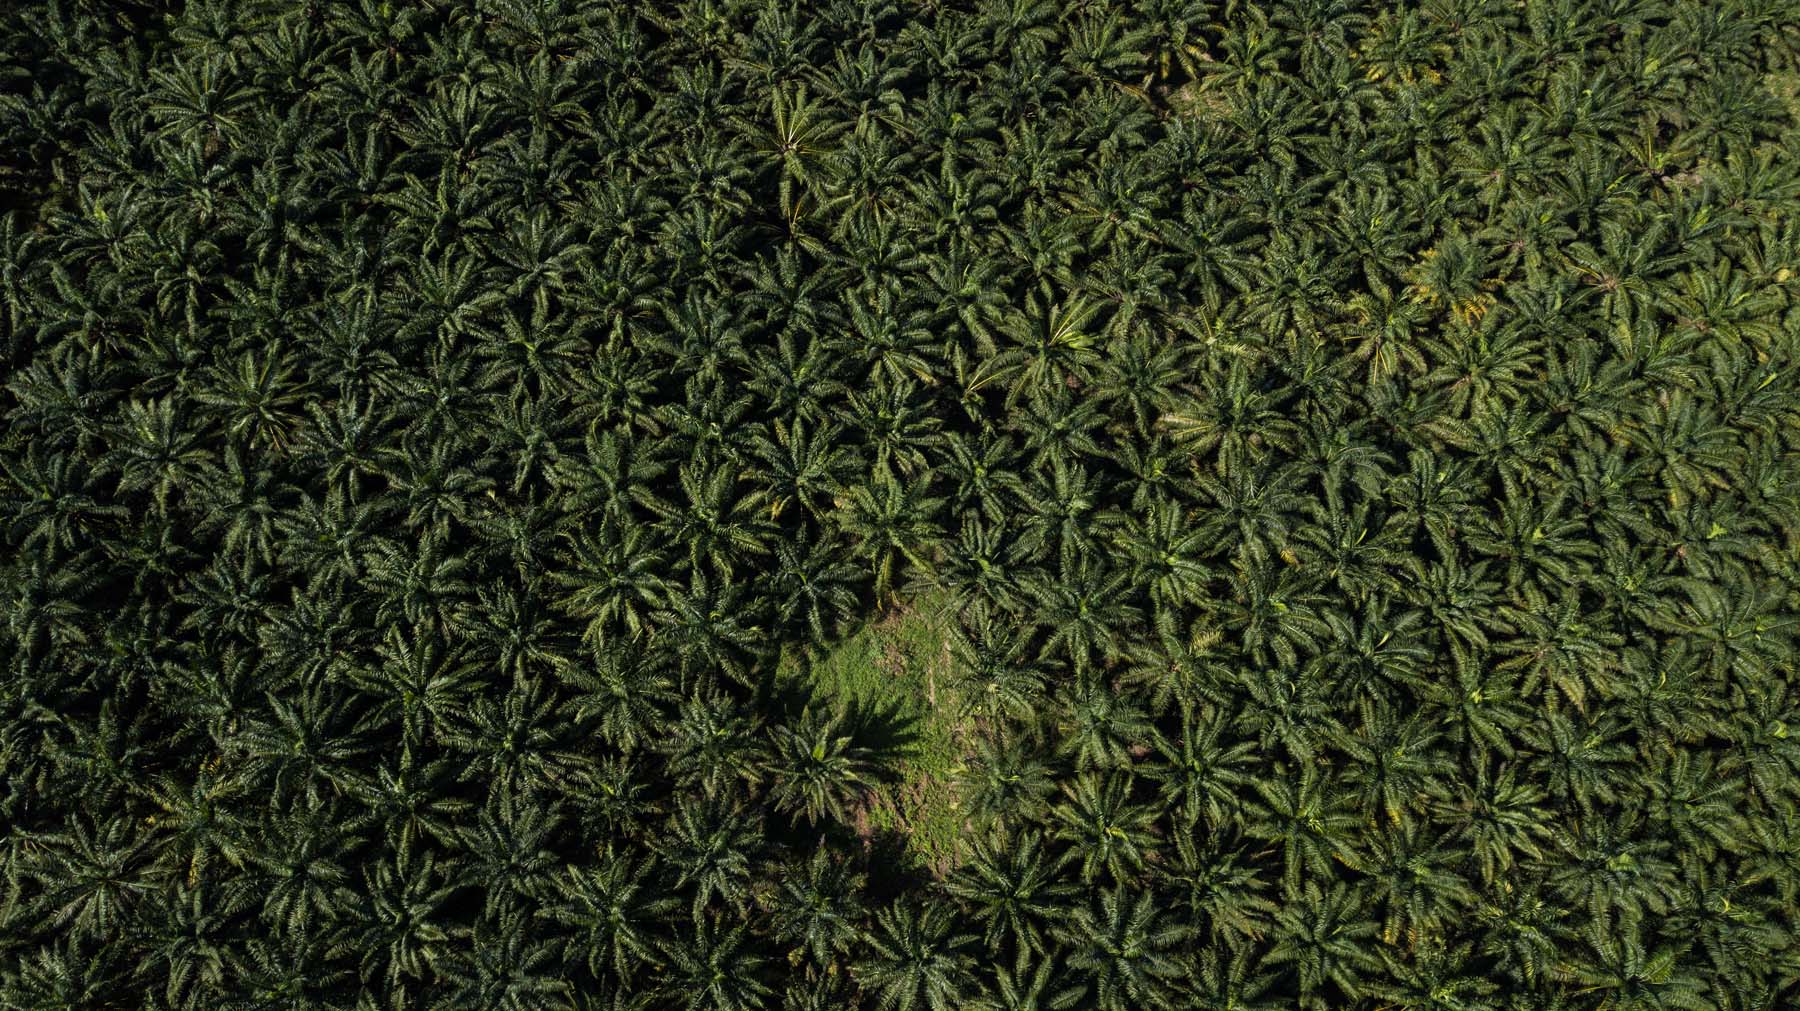 Palma de aceite: las plantaciones que acorralan selvas y manglares en el sureste de México - Palma-de-aceite-82